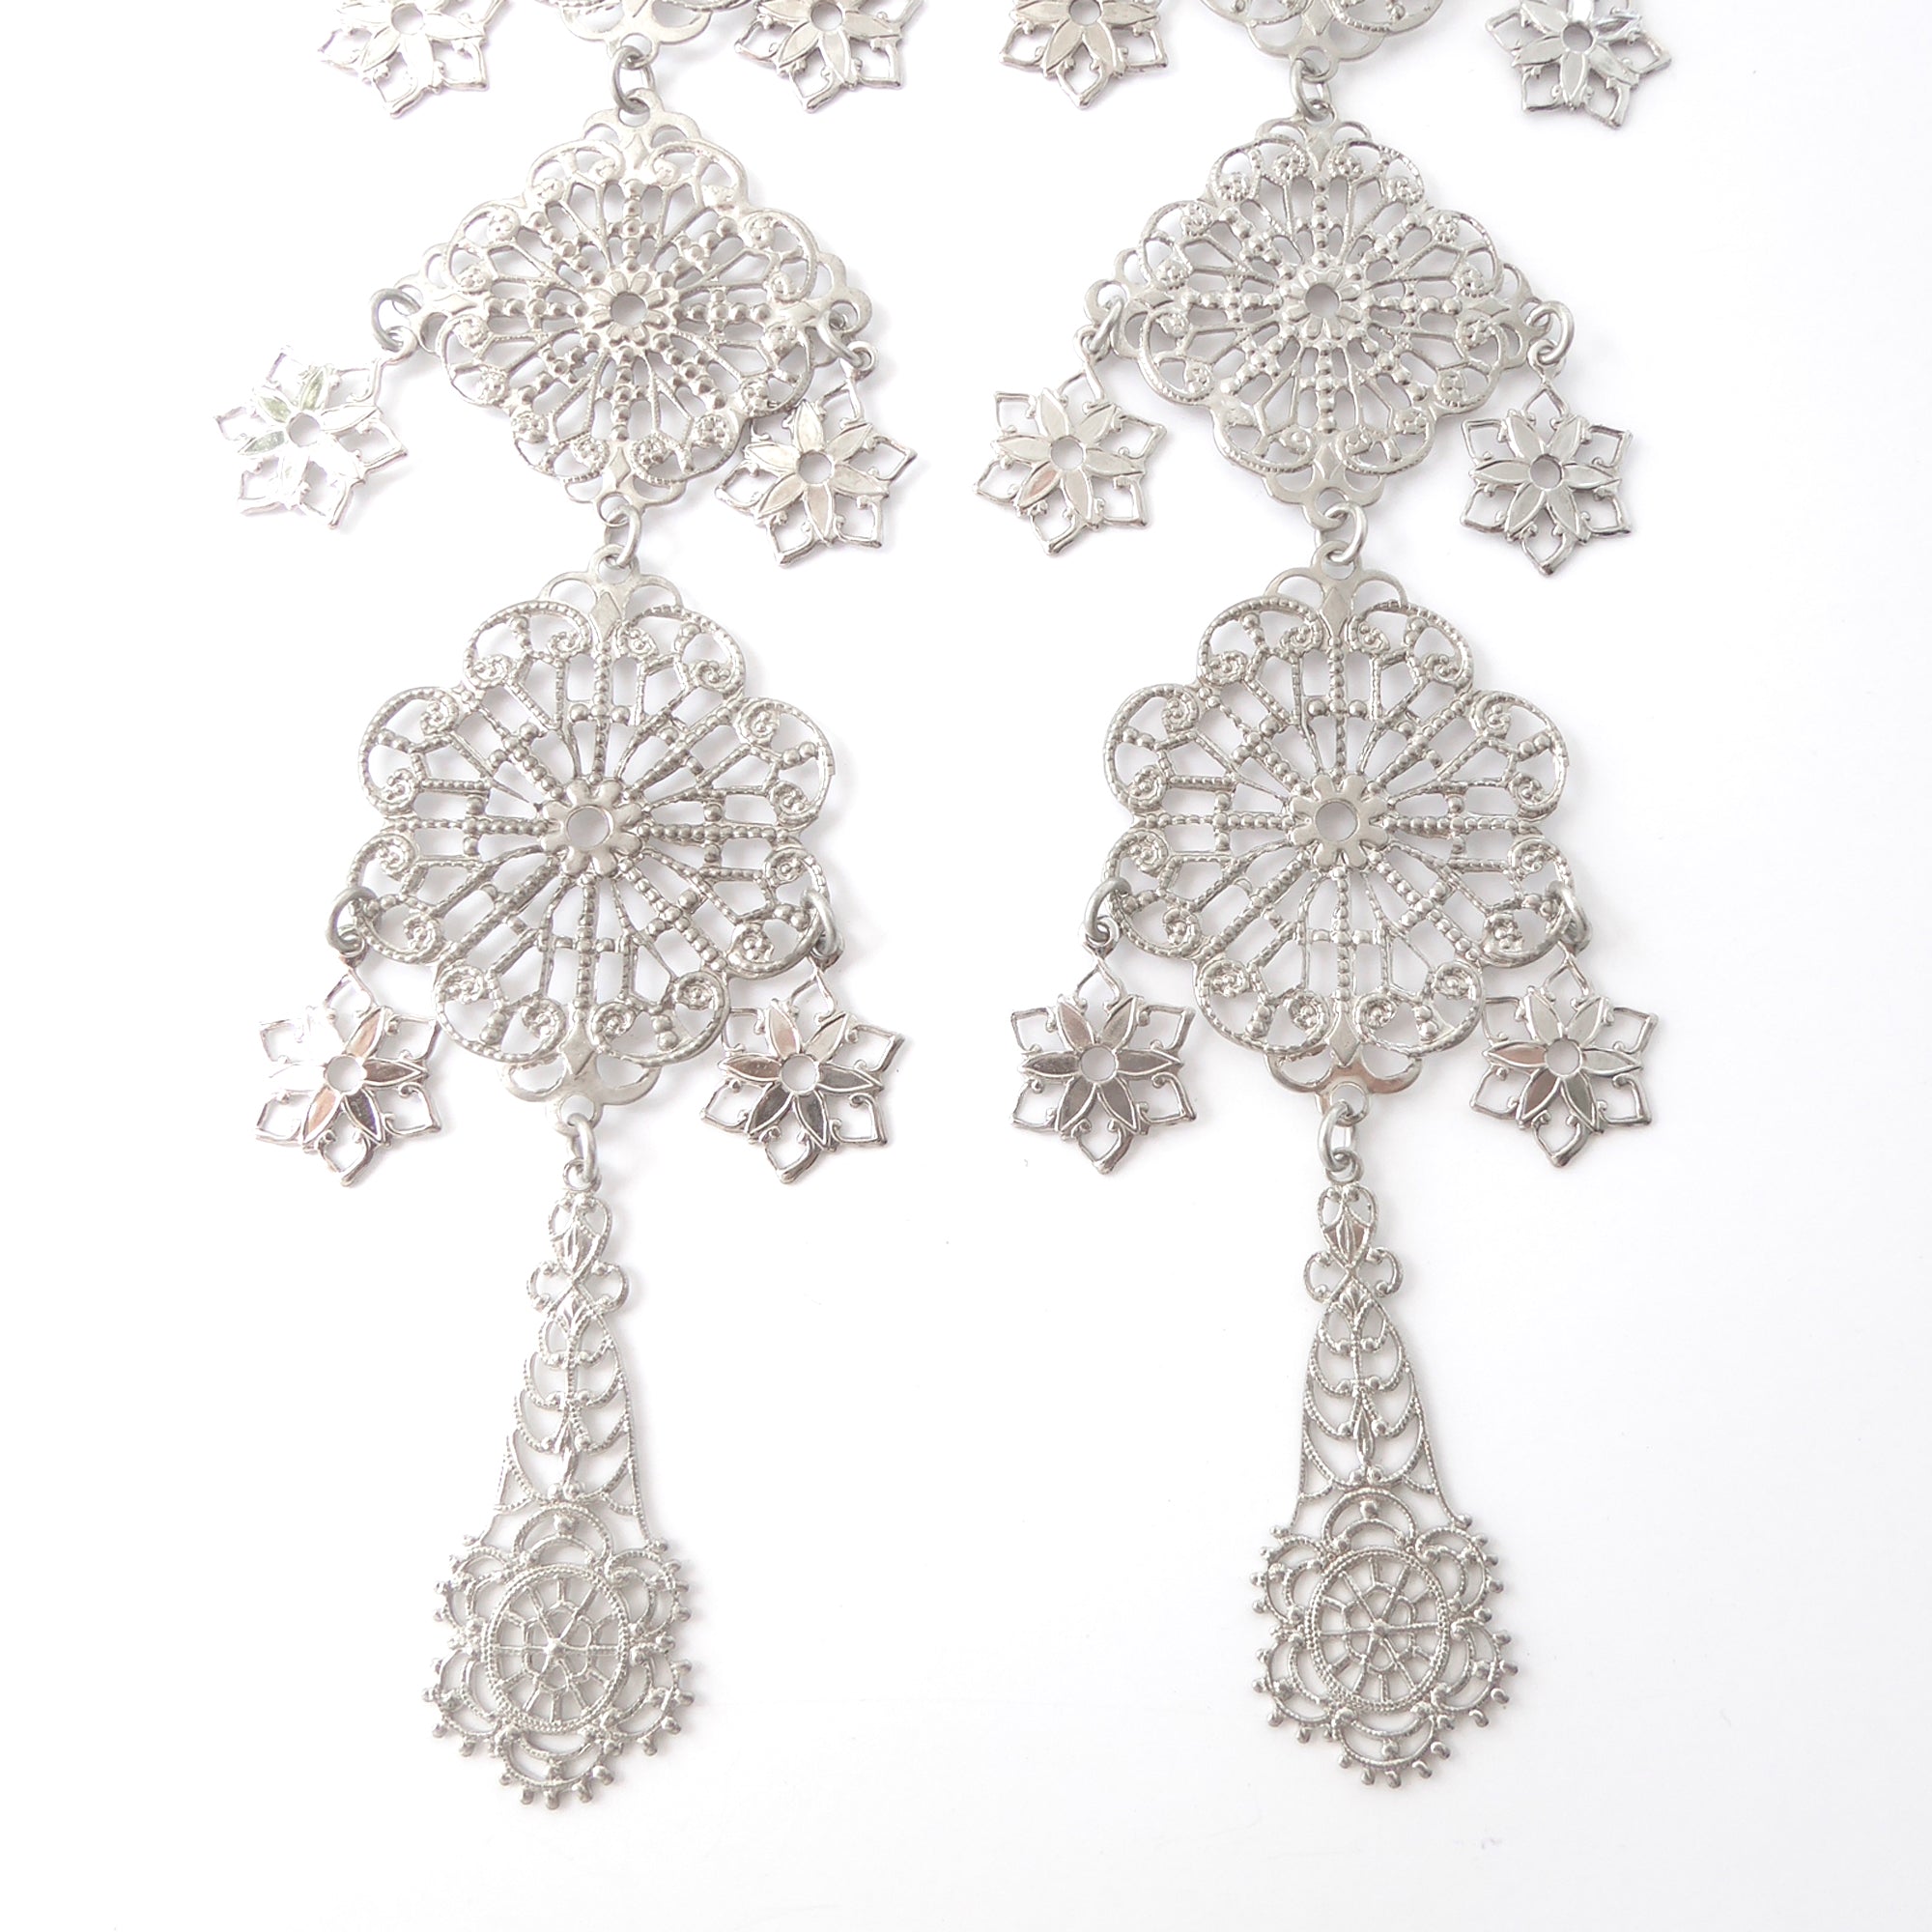 Silver long estrella earrings by Jenny Dayco 5